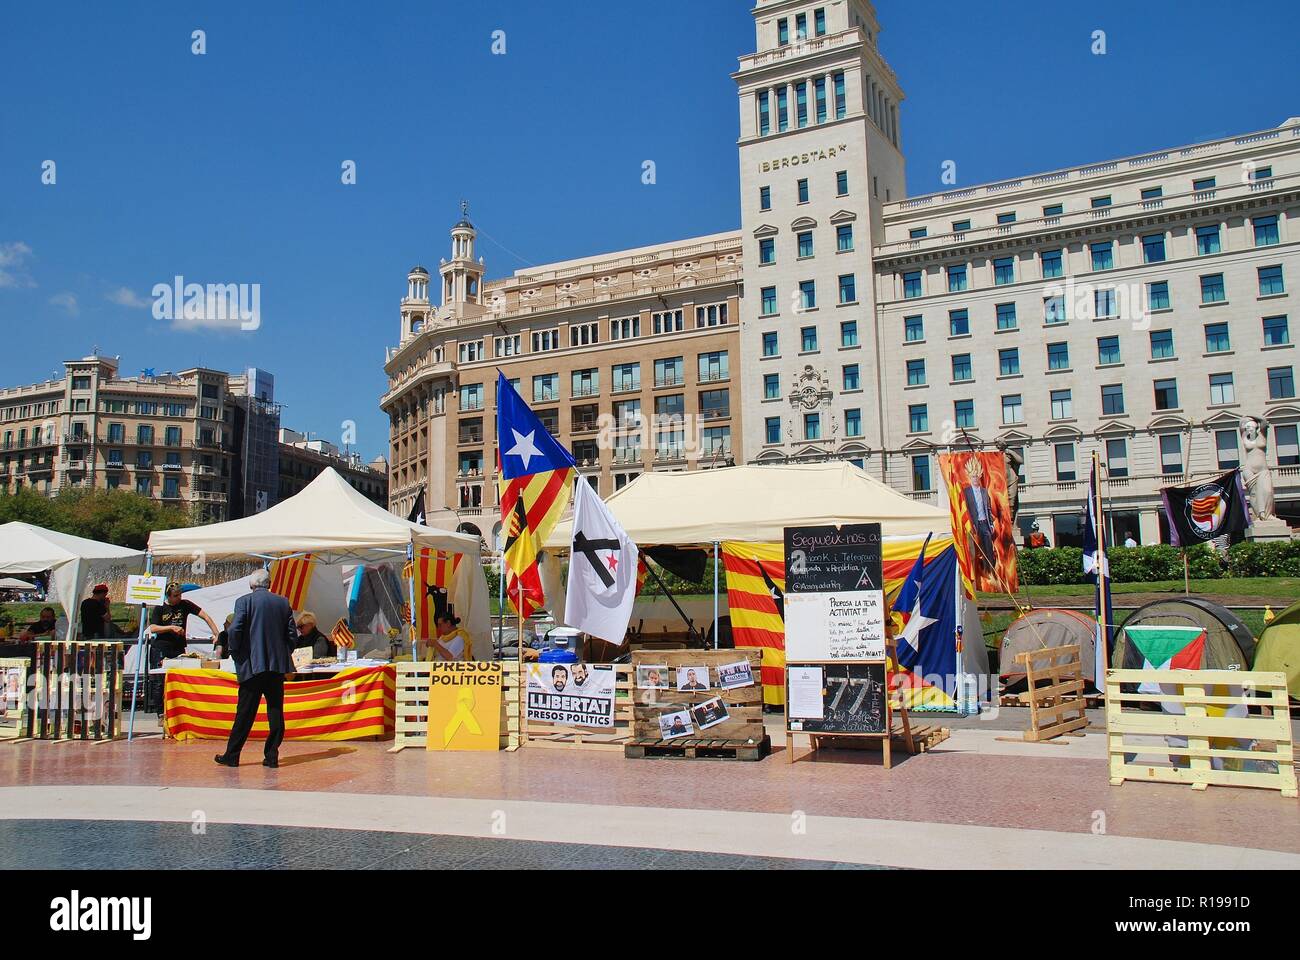 Les militants de la Llibertat Presos Politique (libérer les prisonniers politiques) mouvement campagne dans la Placa Catalunya à Barcelone, Espagne le 17 avril 2018. Banque D'Images